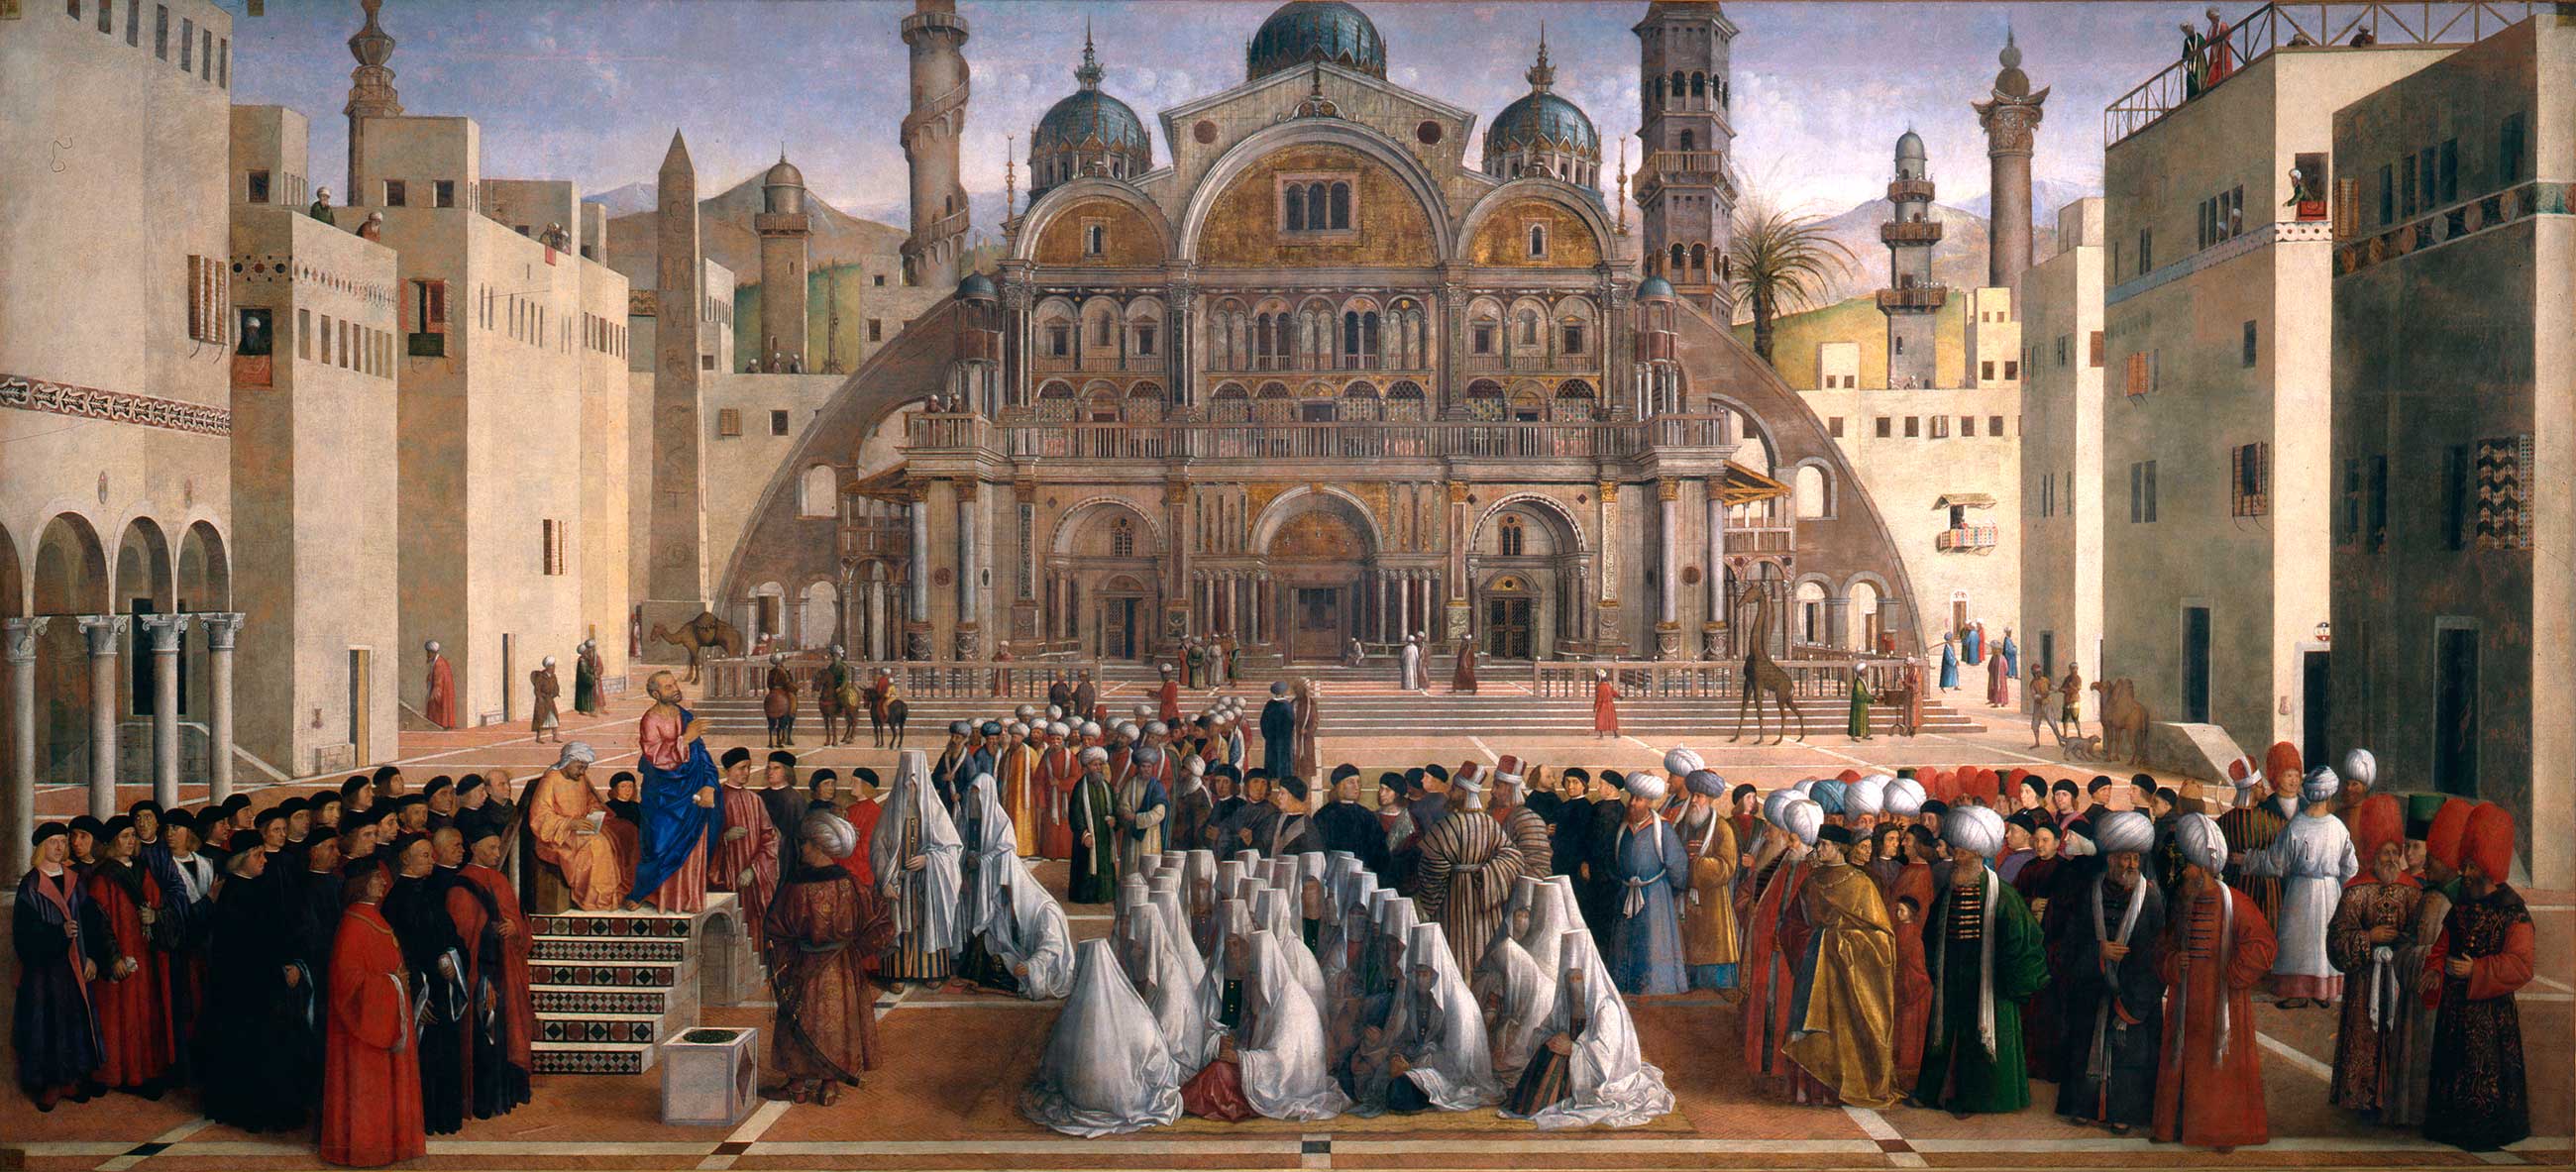 Gentile Bellini and Giovanni Bellini